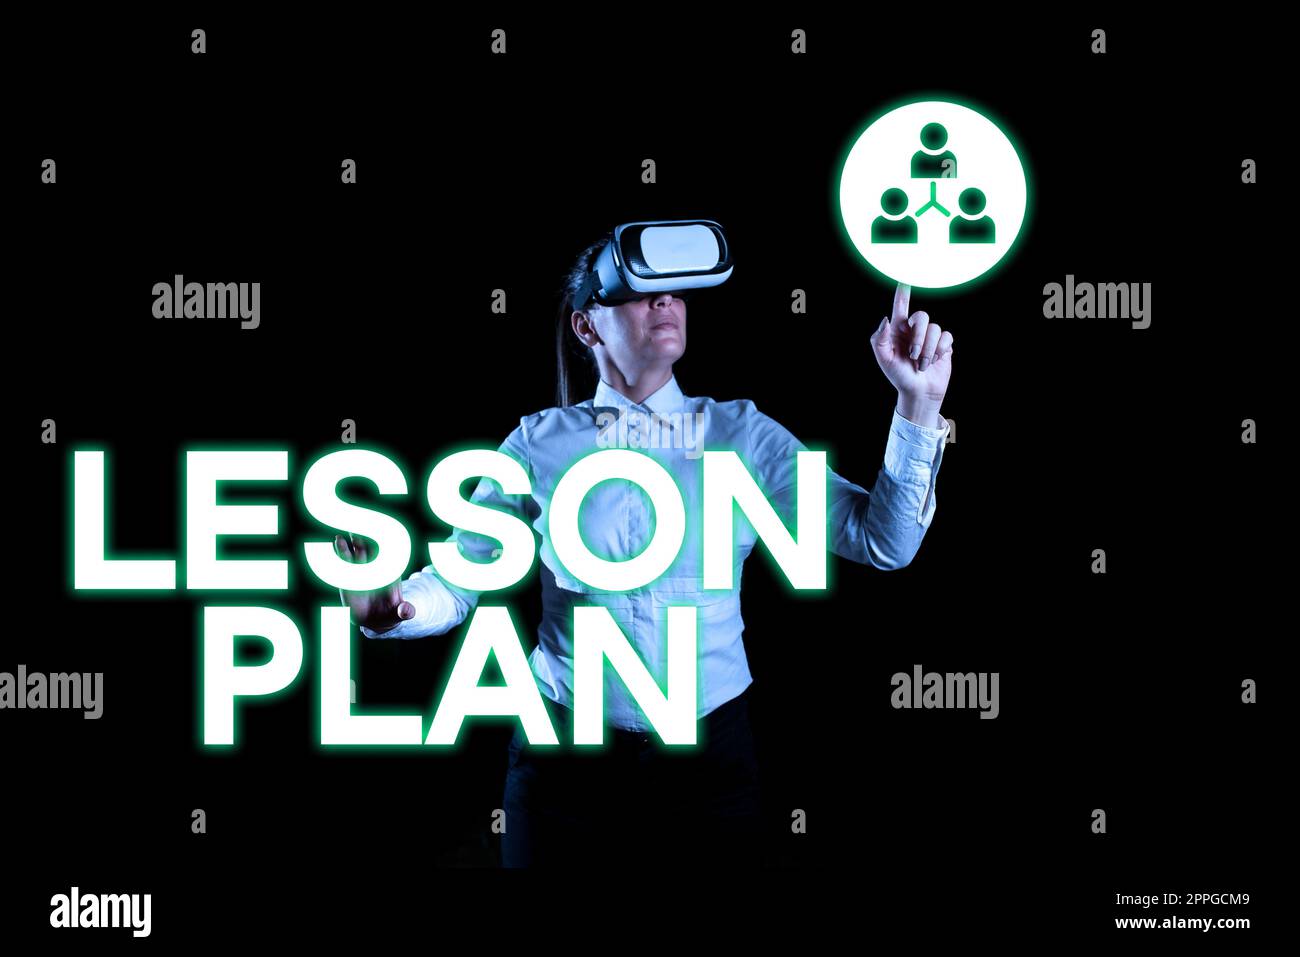 Text mit Inspiration Lesson Plan. Internet-Konzept eine detaillierte Beschreibung des Unterrichts durch einen Lehrer Stockfoto